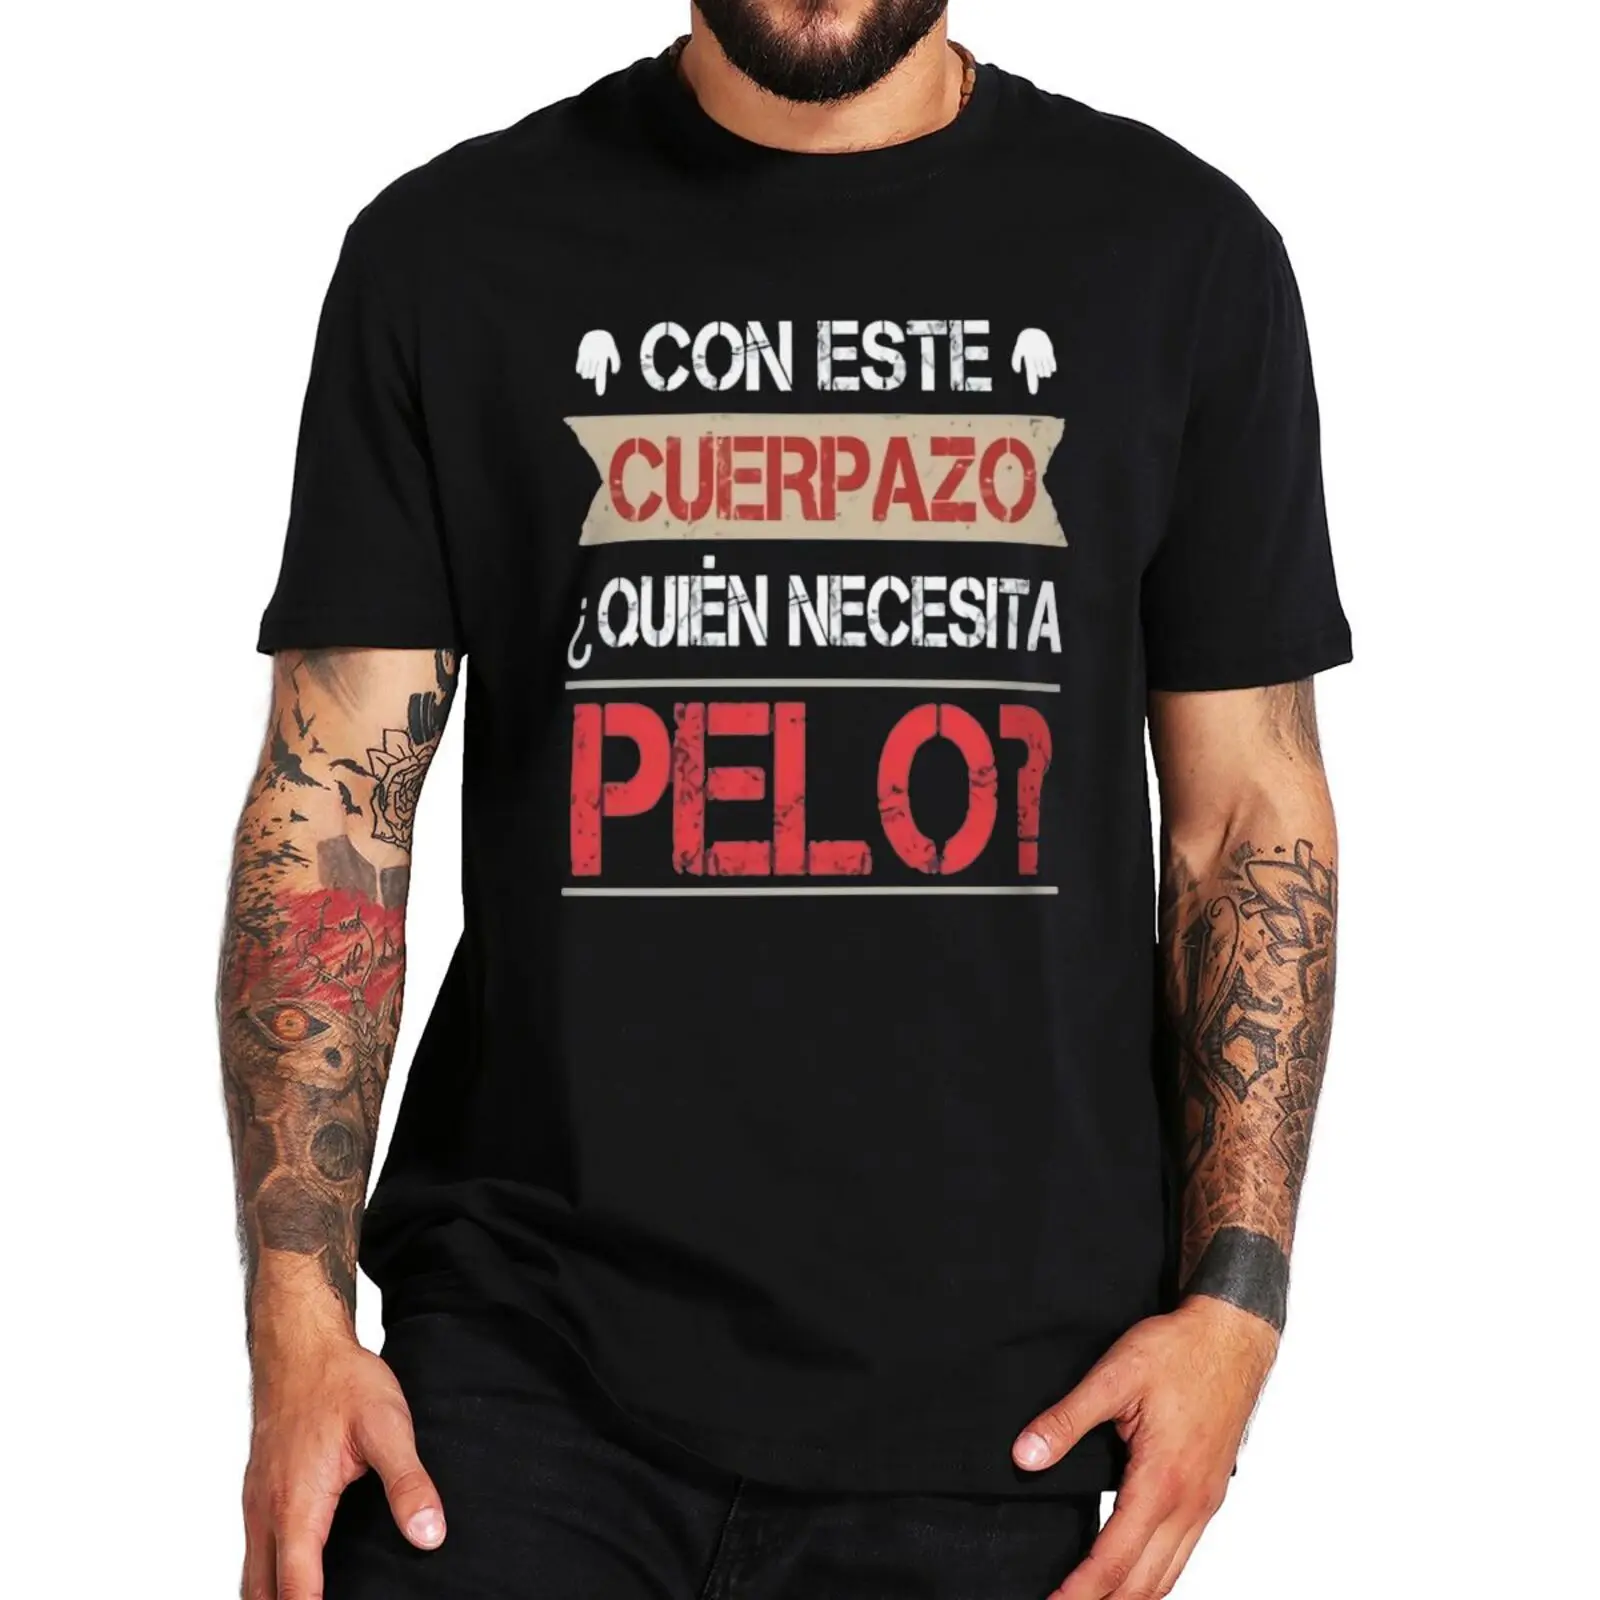 

Эта забавная Мужская футболка с надписью «Great Body Who need Hair», забавная Мужская футболка с испанским текстом, новинка, 100% хлопковая футболка